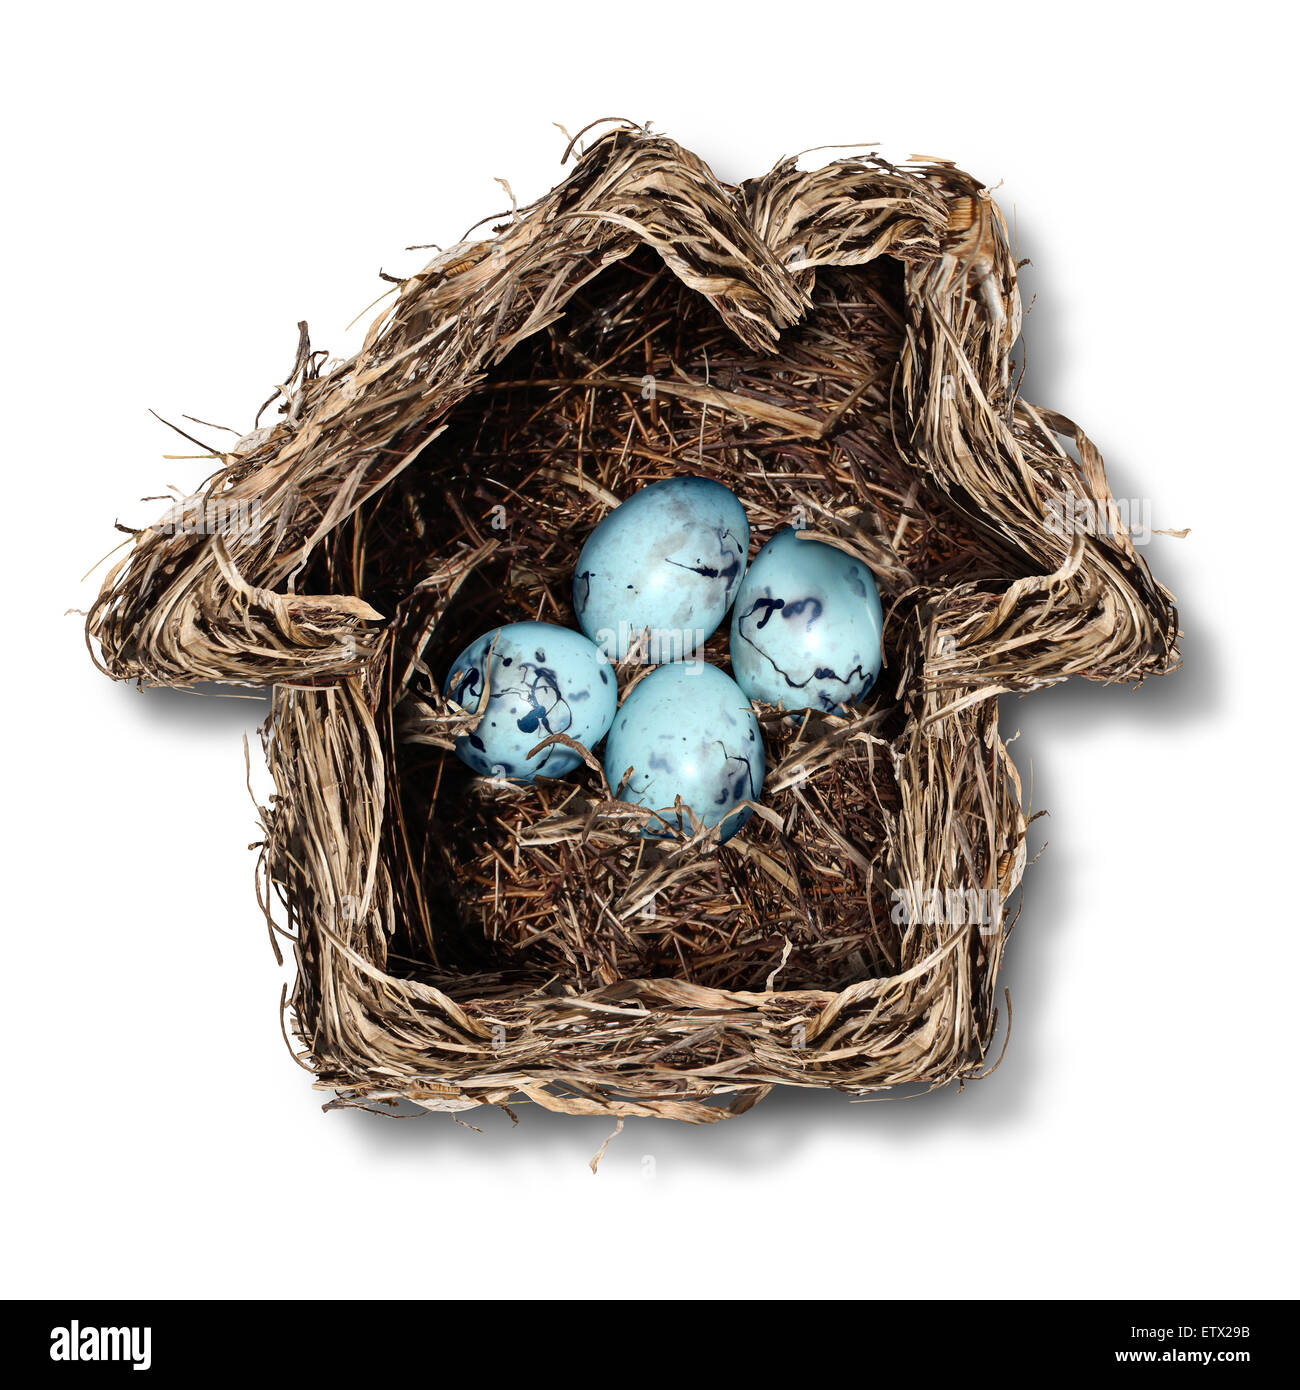 Home concetto di assicurazione e protezione della famiglia simbolo come un nido di uccelli conformata come una casa con un gruppo di fragili uova all'interno come una metafora per la protezione di residenza o di parenting. Foto Stock